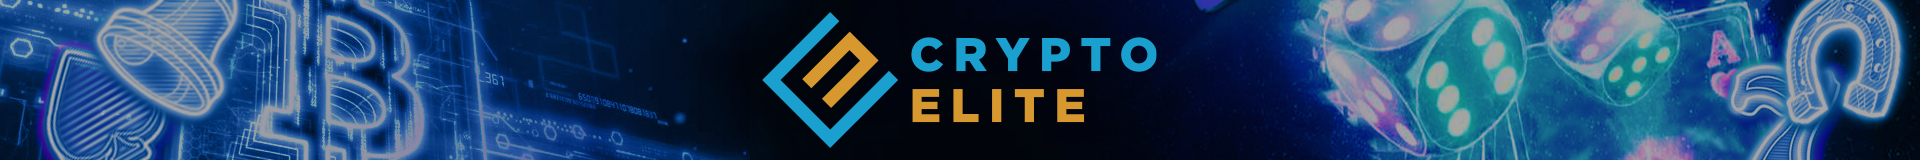 Crypto Elite